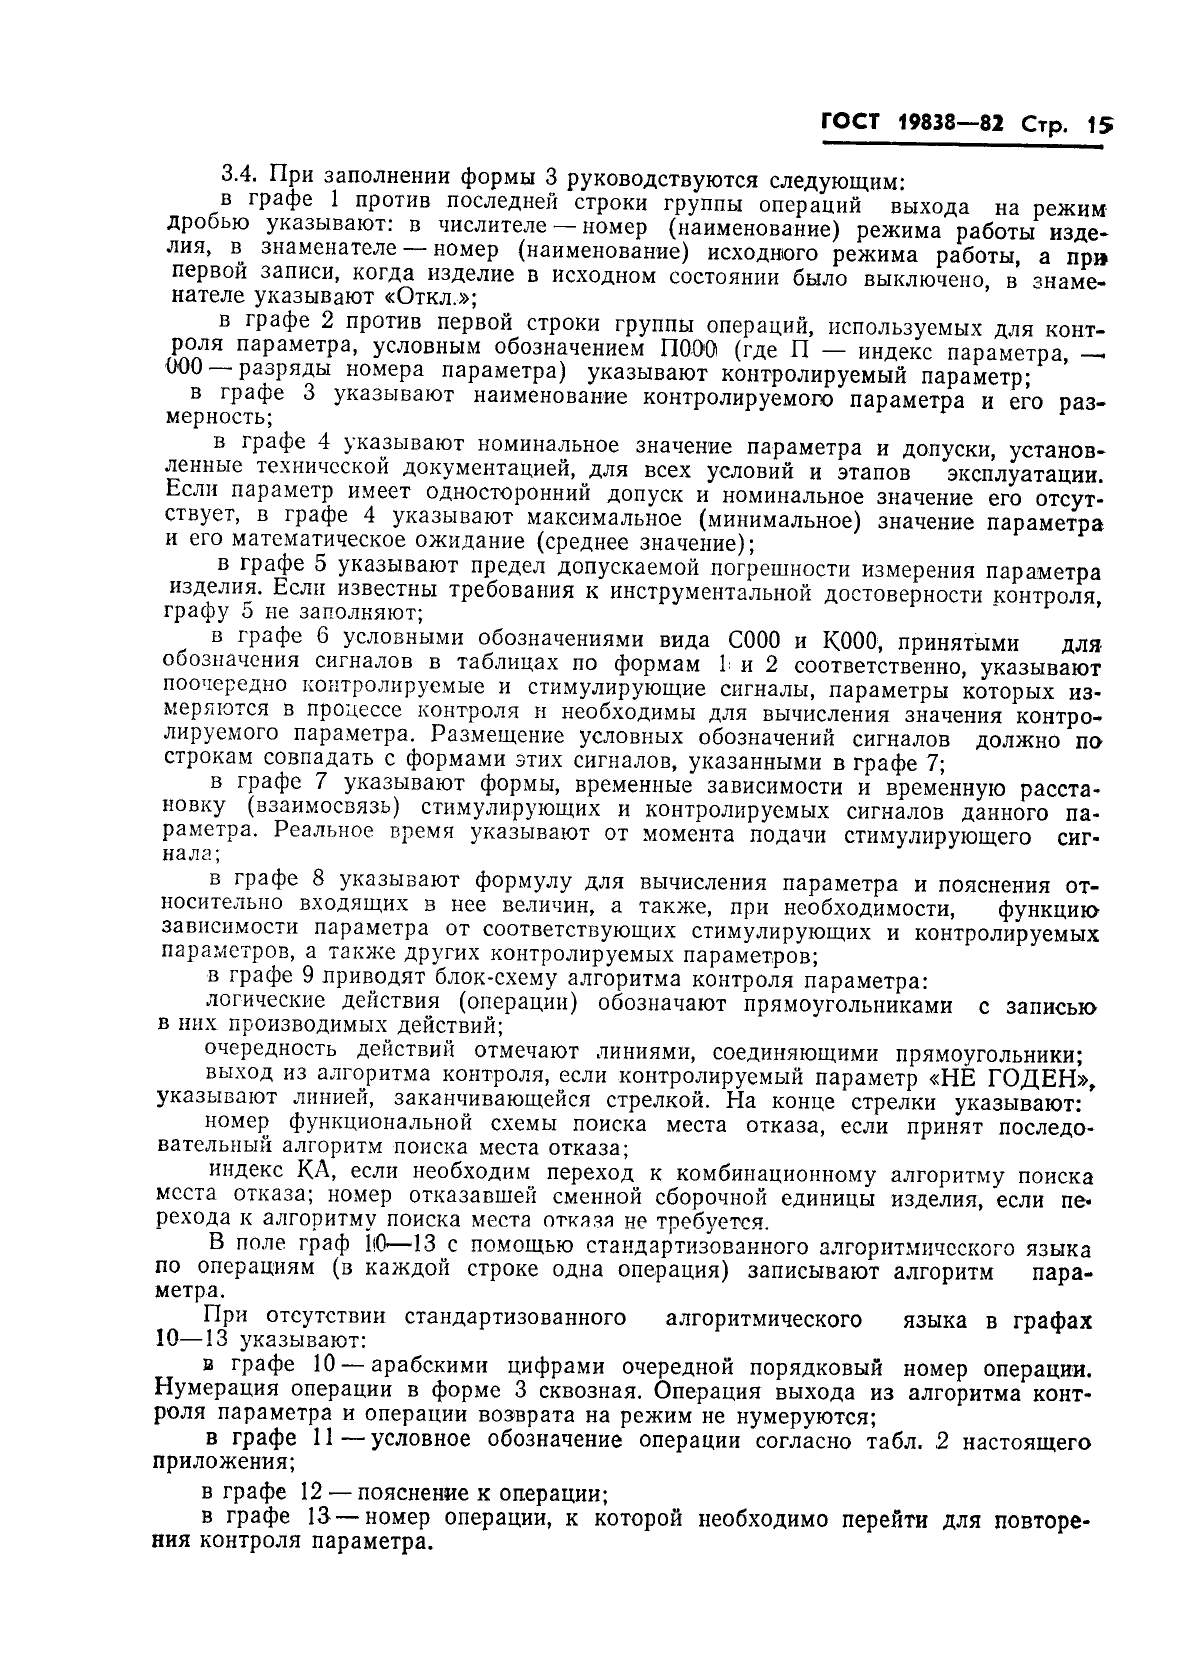 ГОСТ 19838-82 Характеристика контролепригодности изделий авиационной техники. Правила изложения и оформления (фото 16 из 21)